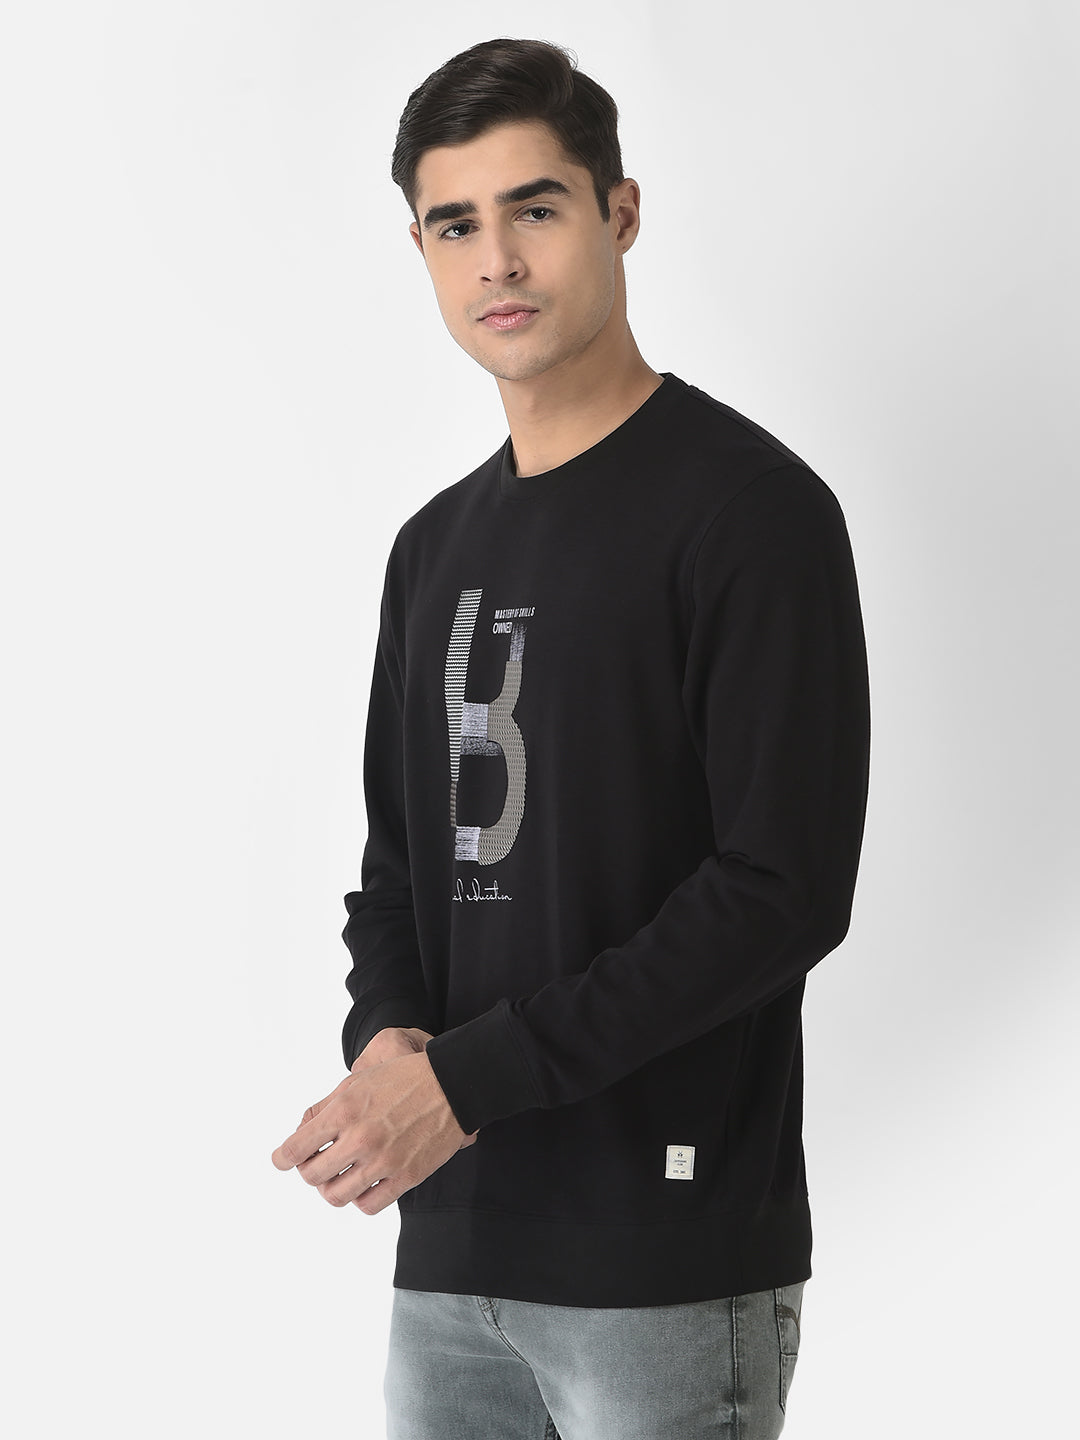  Black Sweatshirt in Cotton Blend